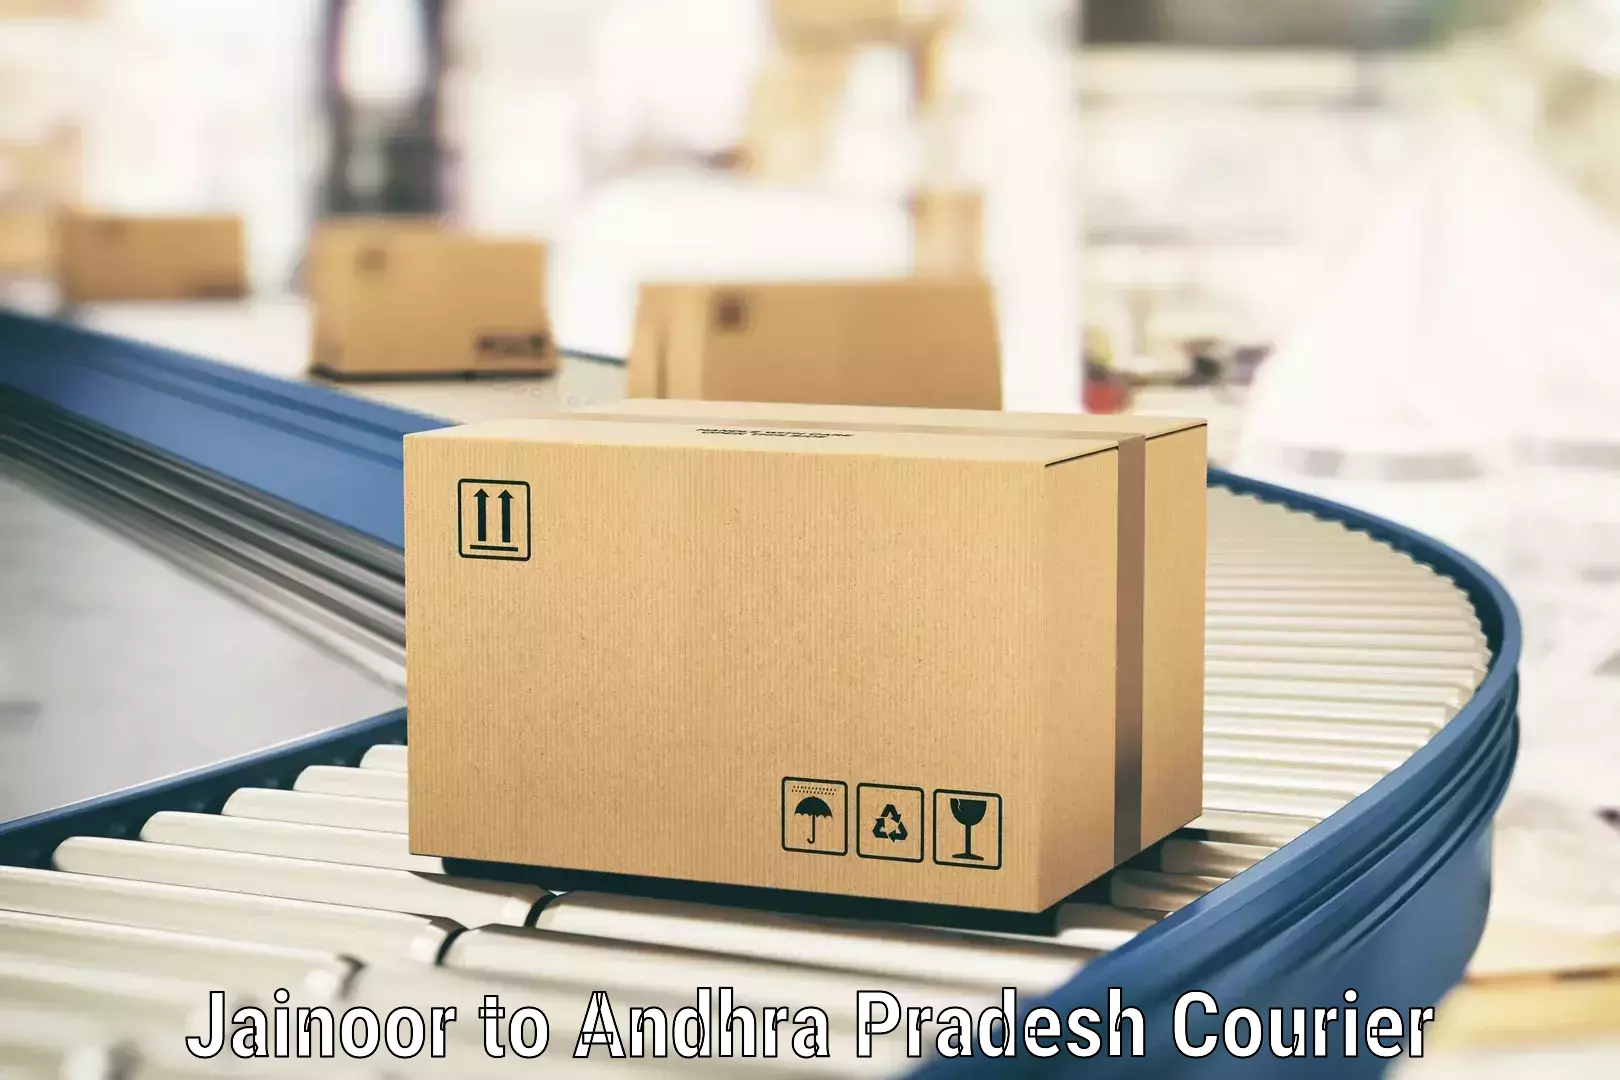 Efficient parcel transport in Jainoor to Andhra Pradesh